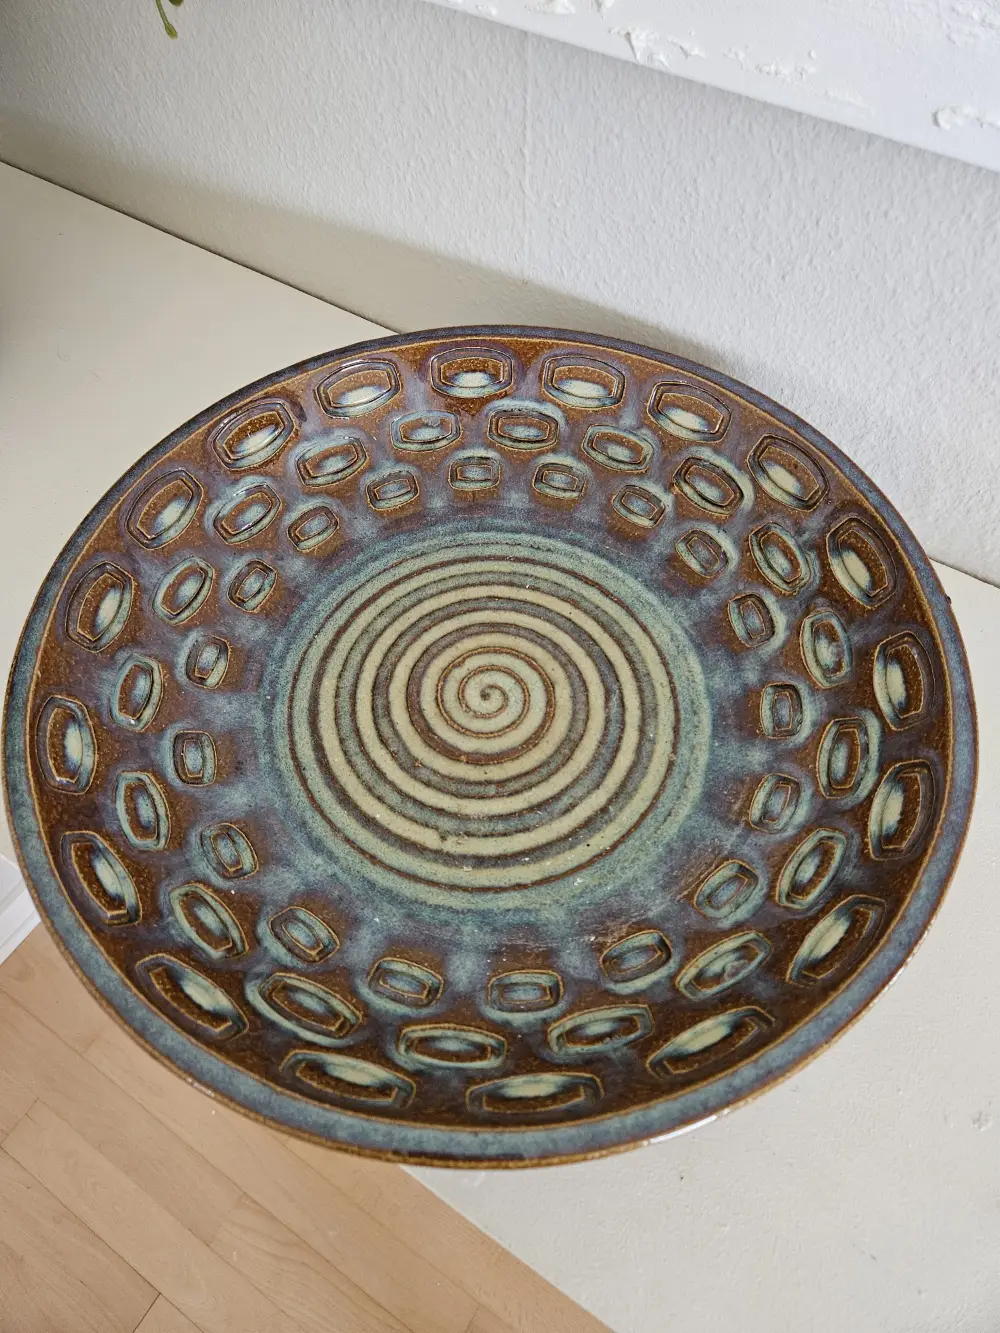 Søholm Keramik